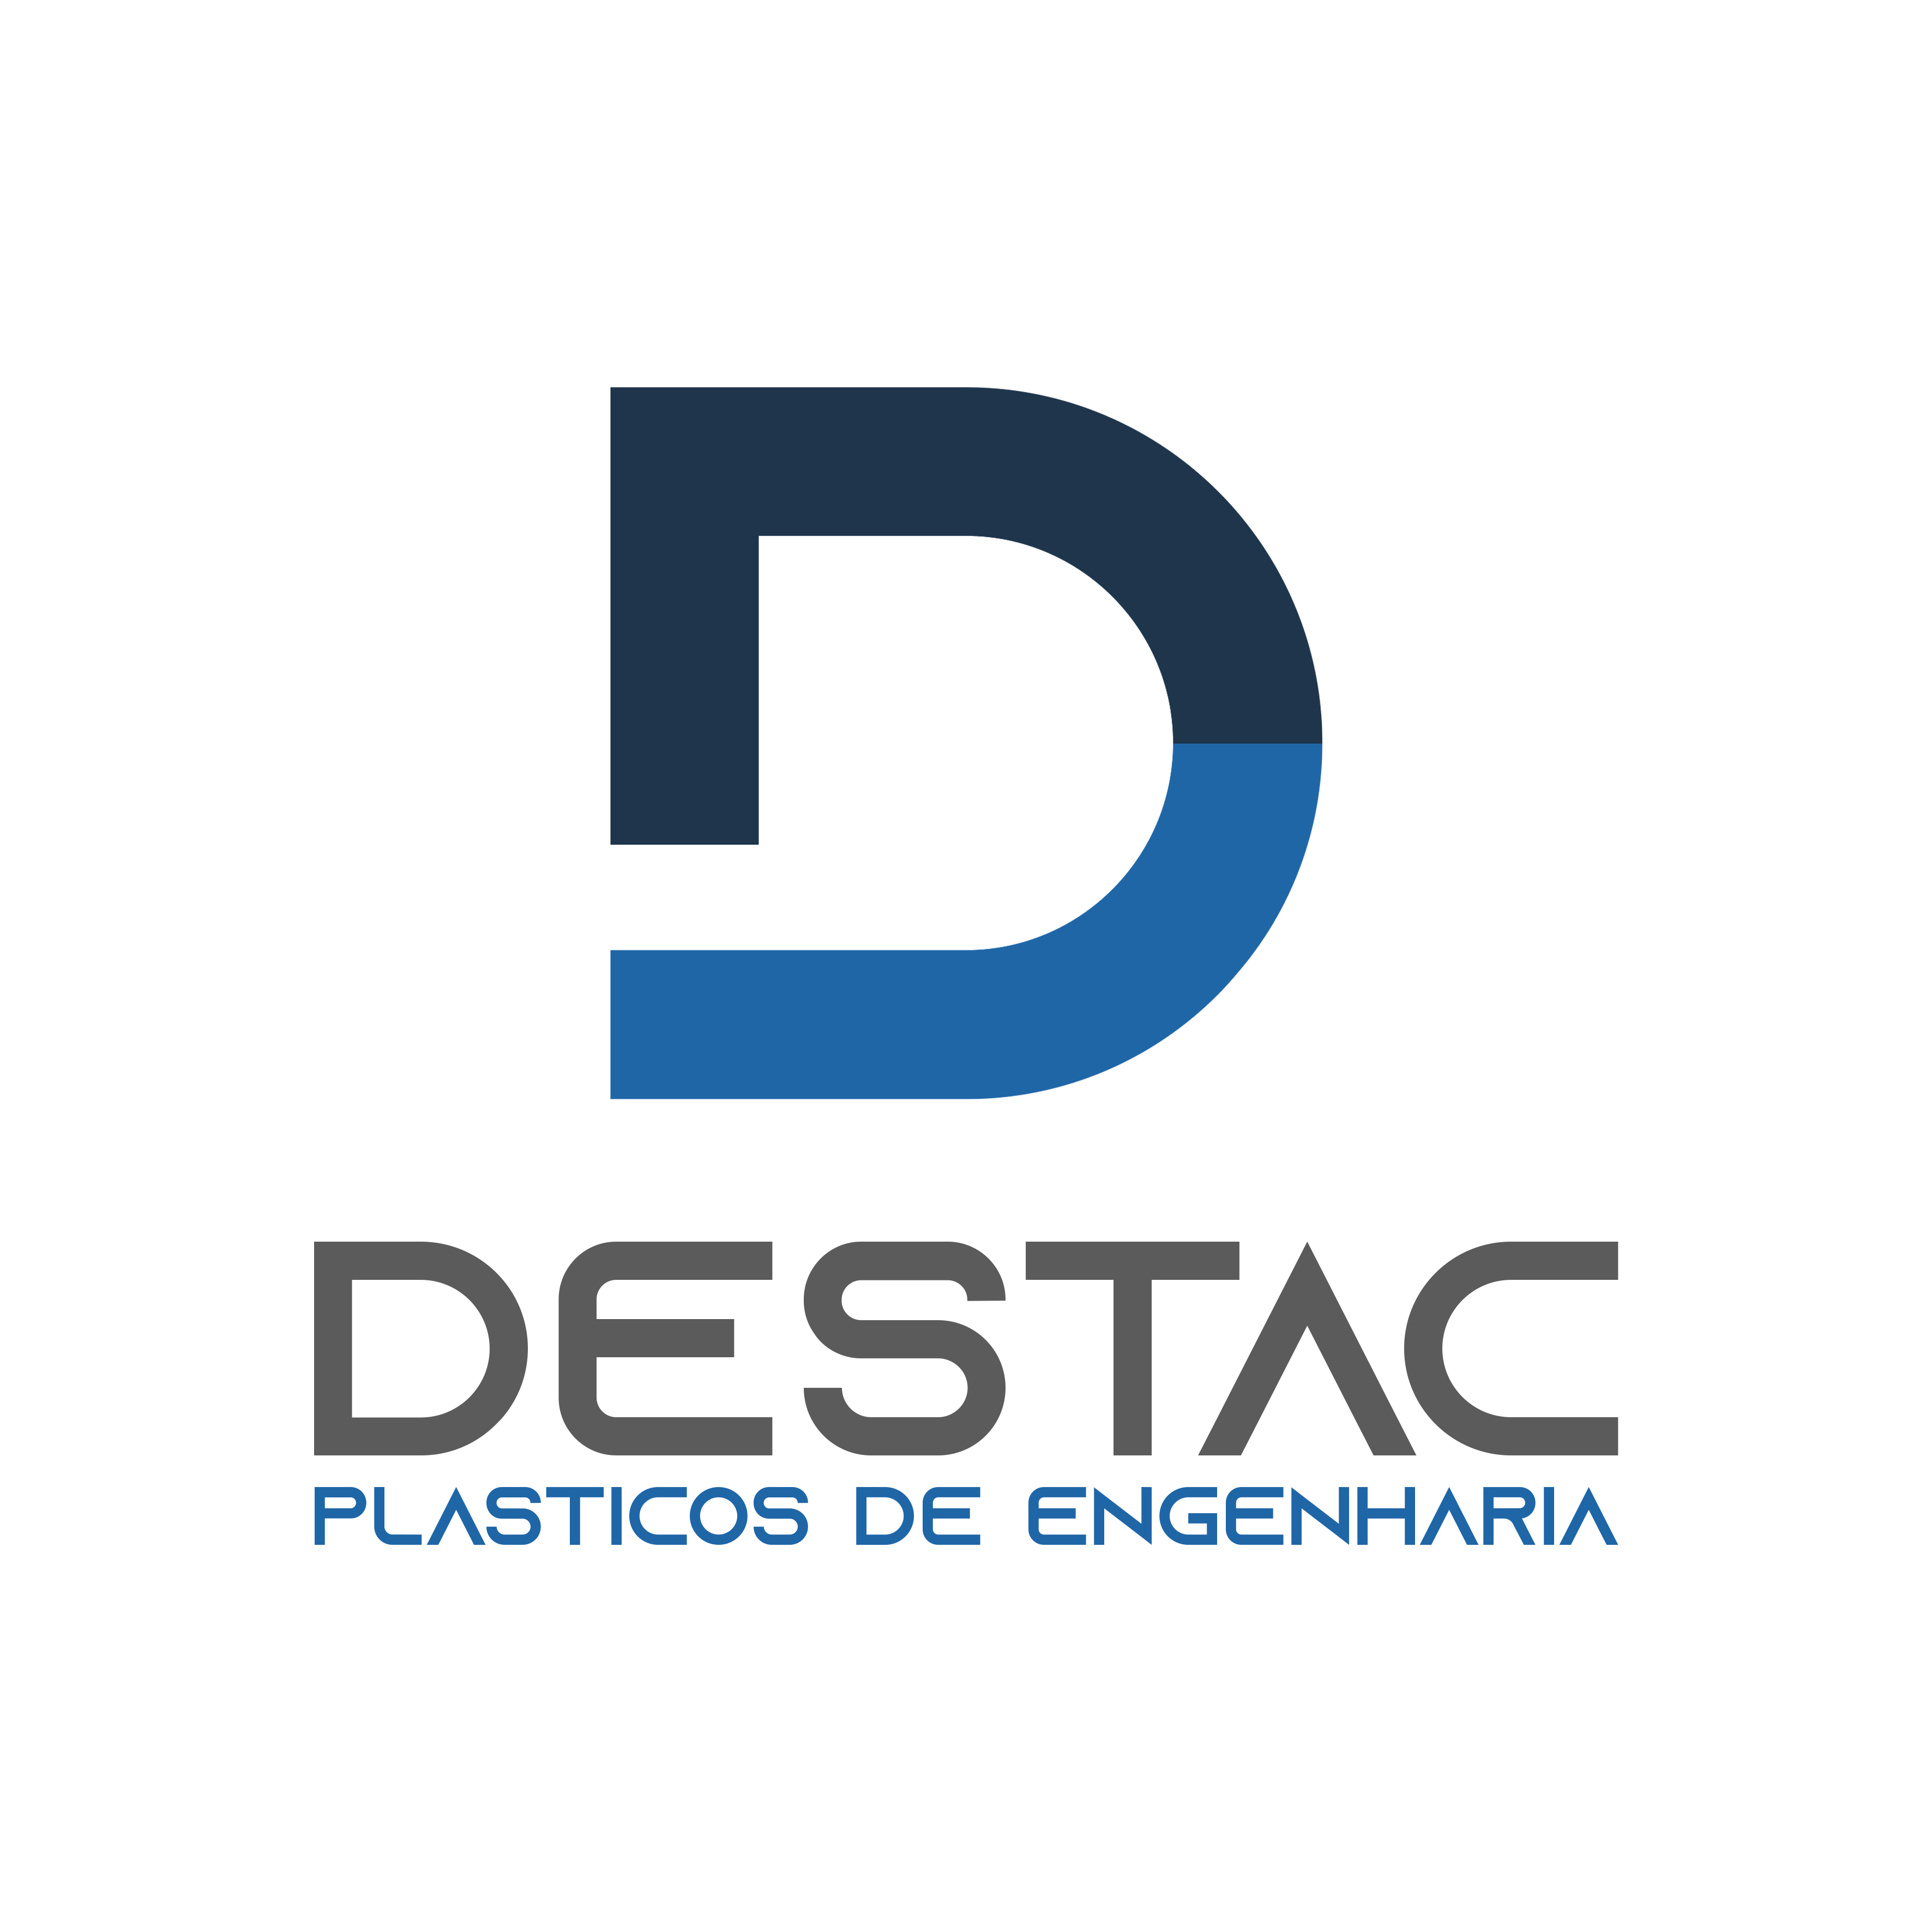 Plásticos de Engenharia - Destac